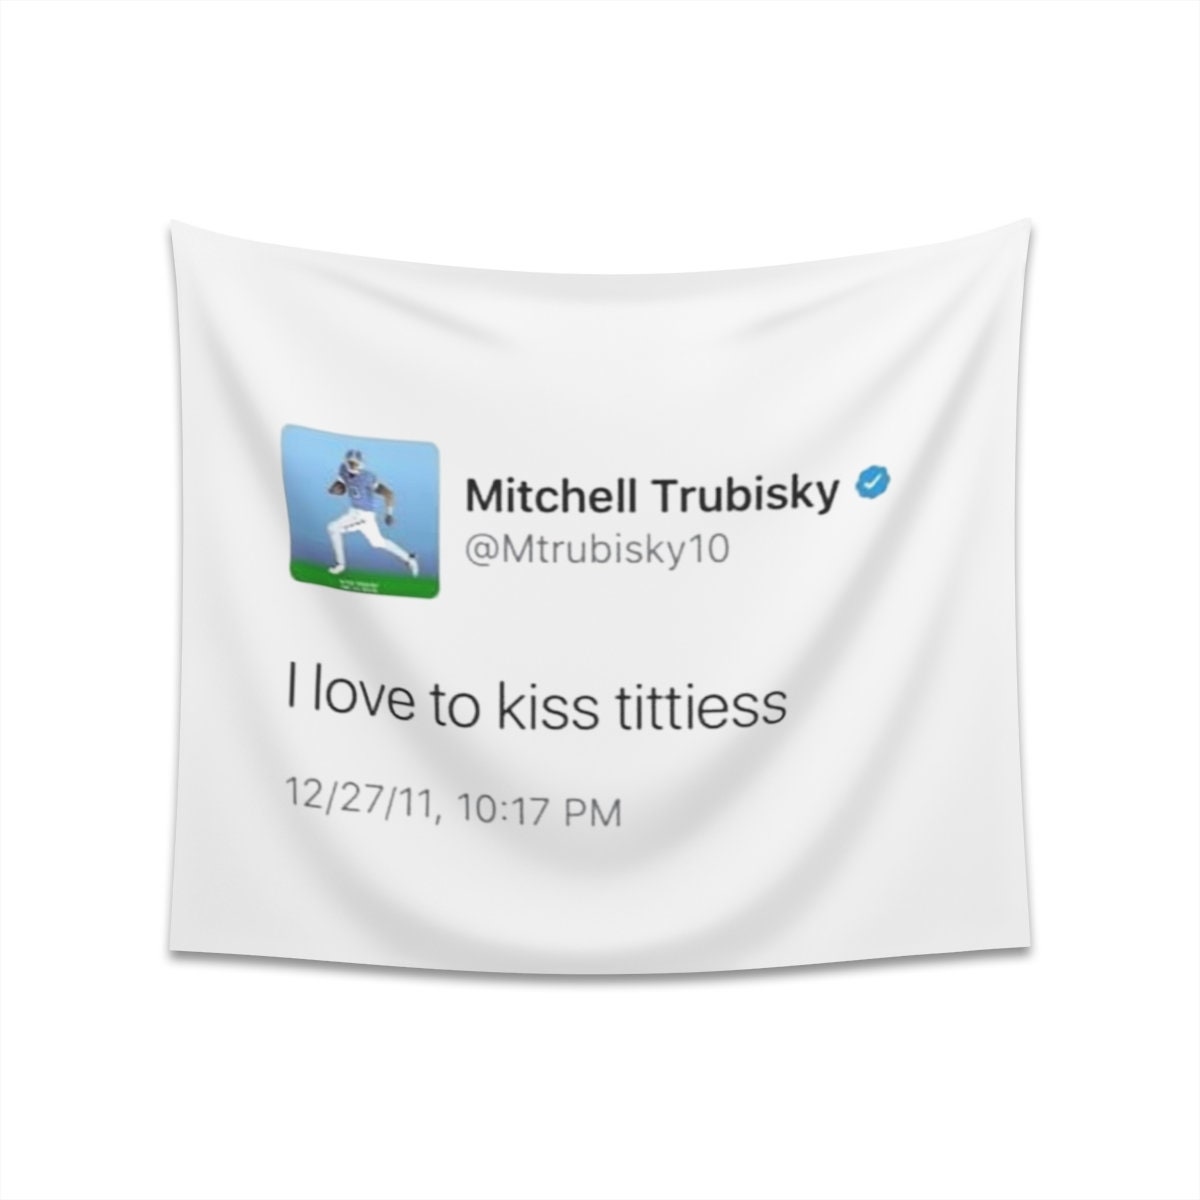 mitch trubisky tweet shirt